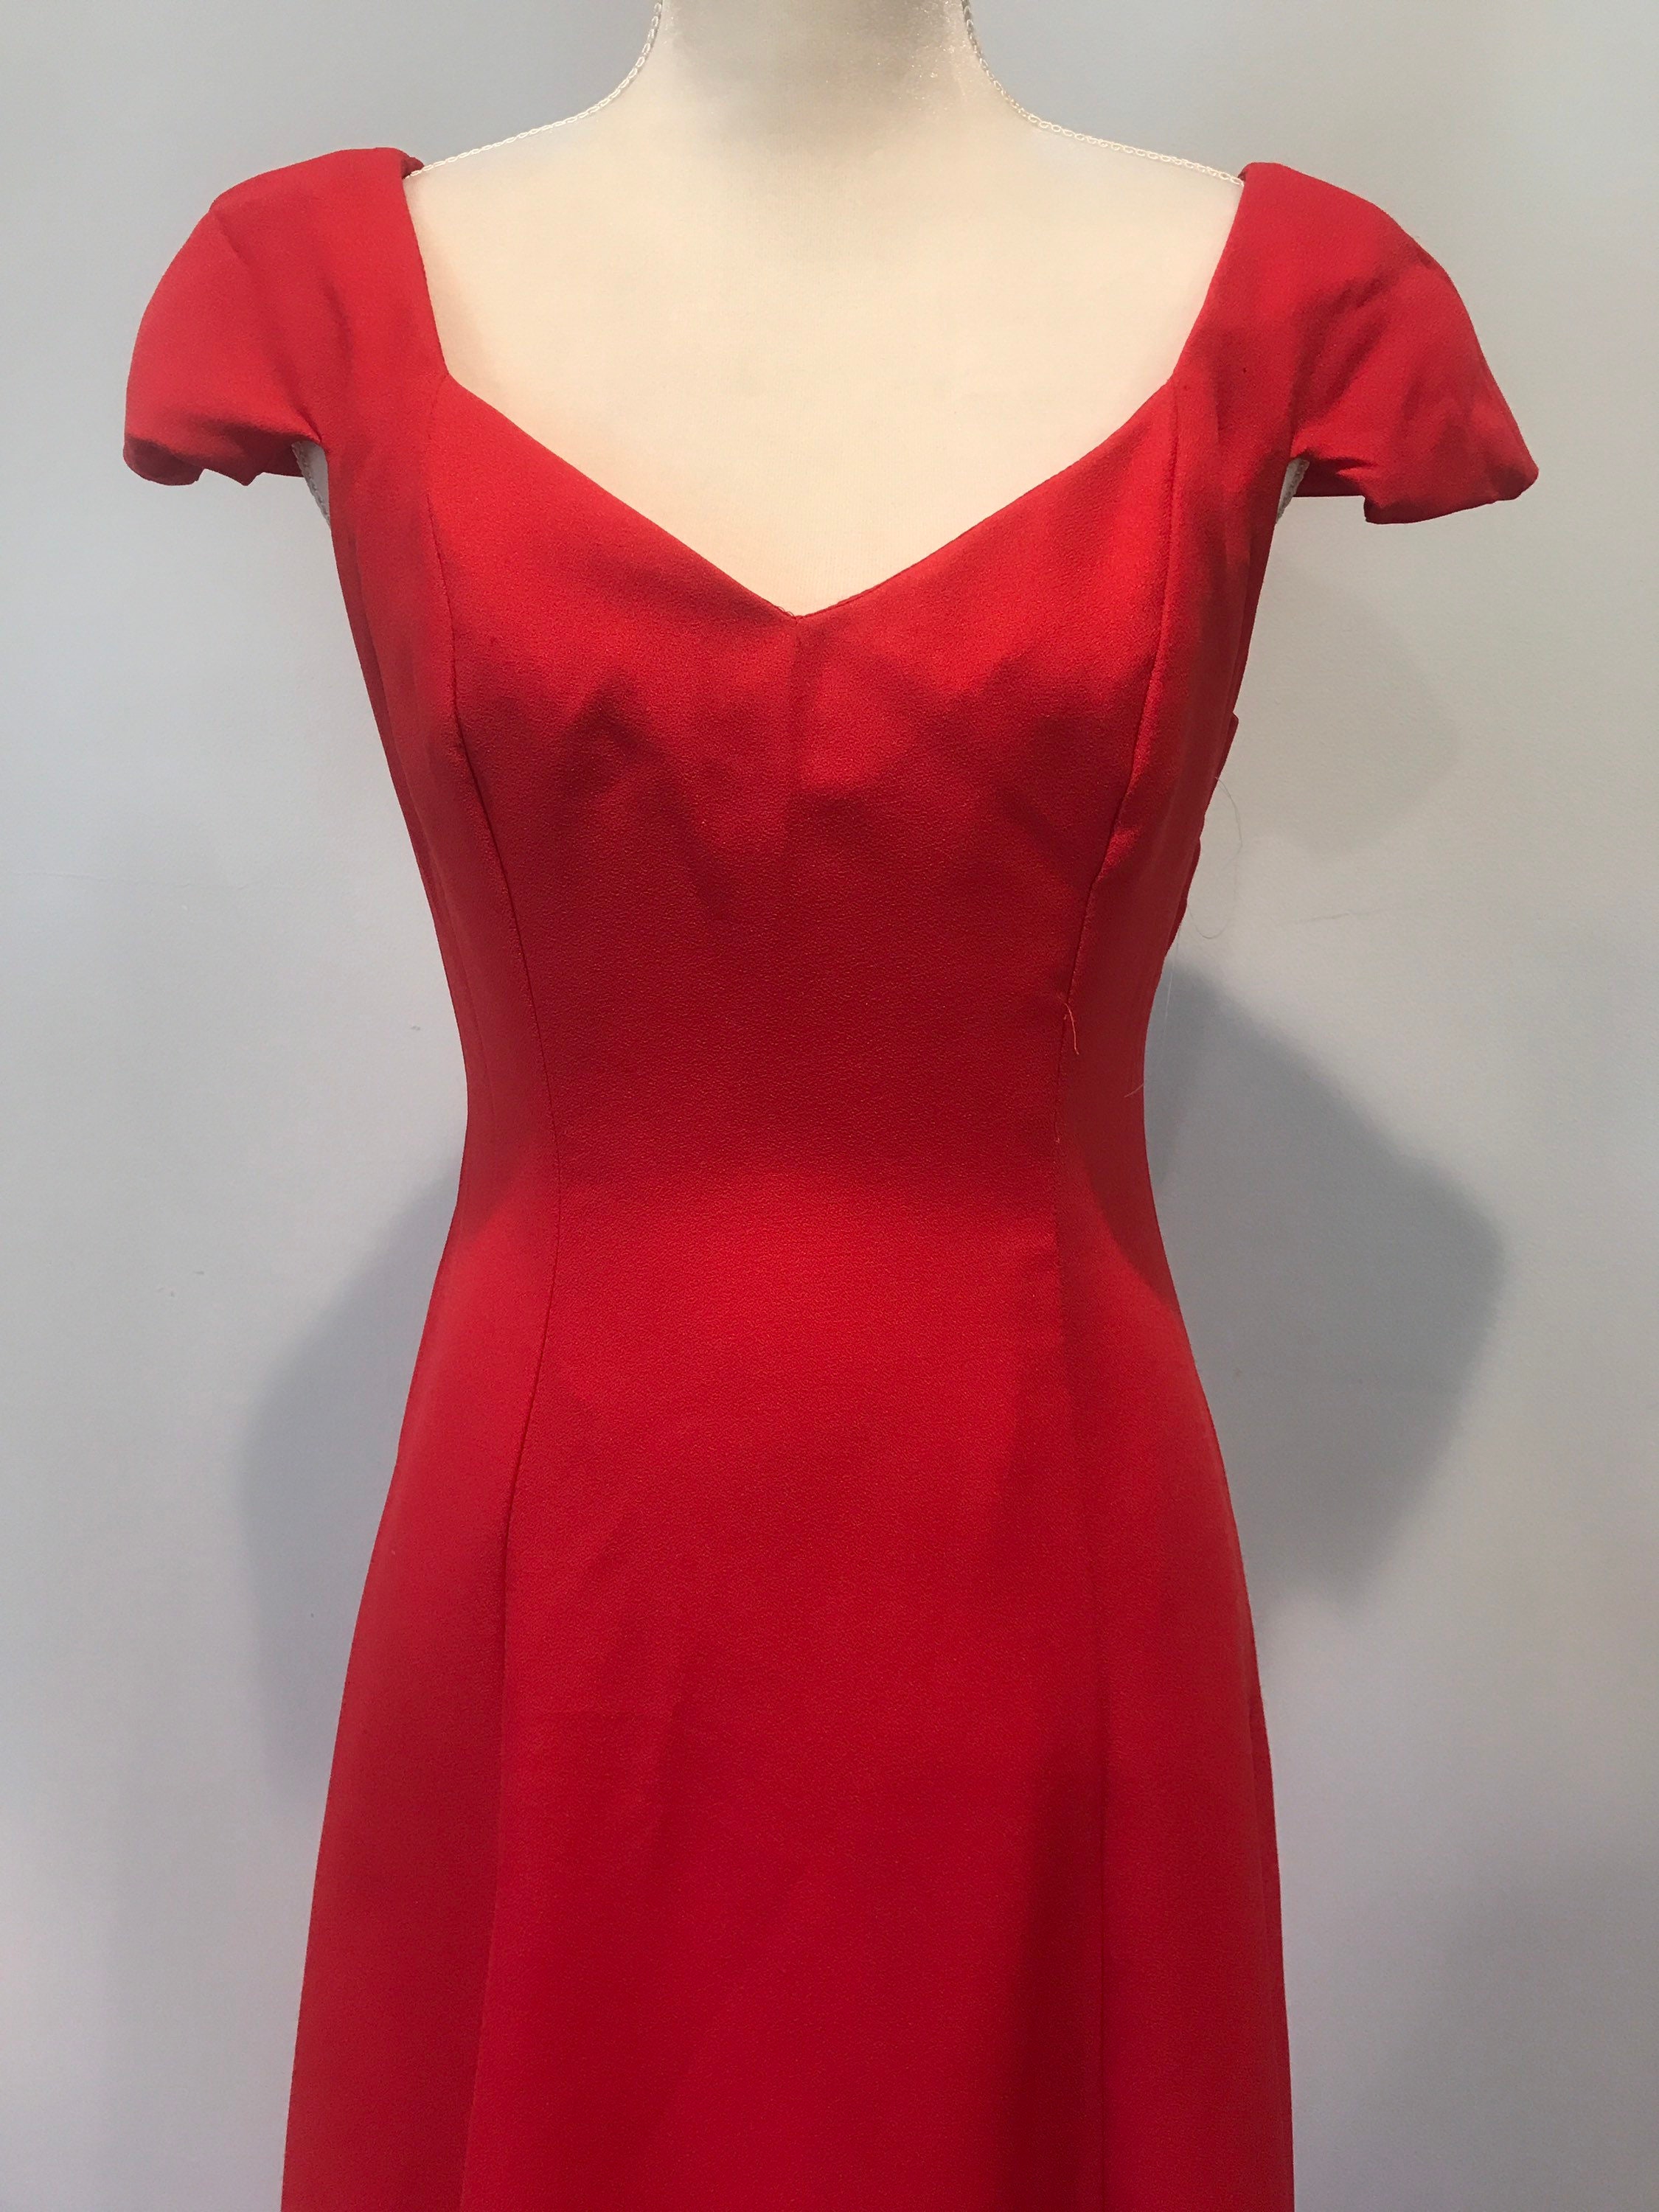 Red Vintage Formal Dress by Jordan Size 9/10 - Etsy